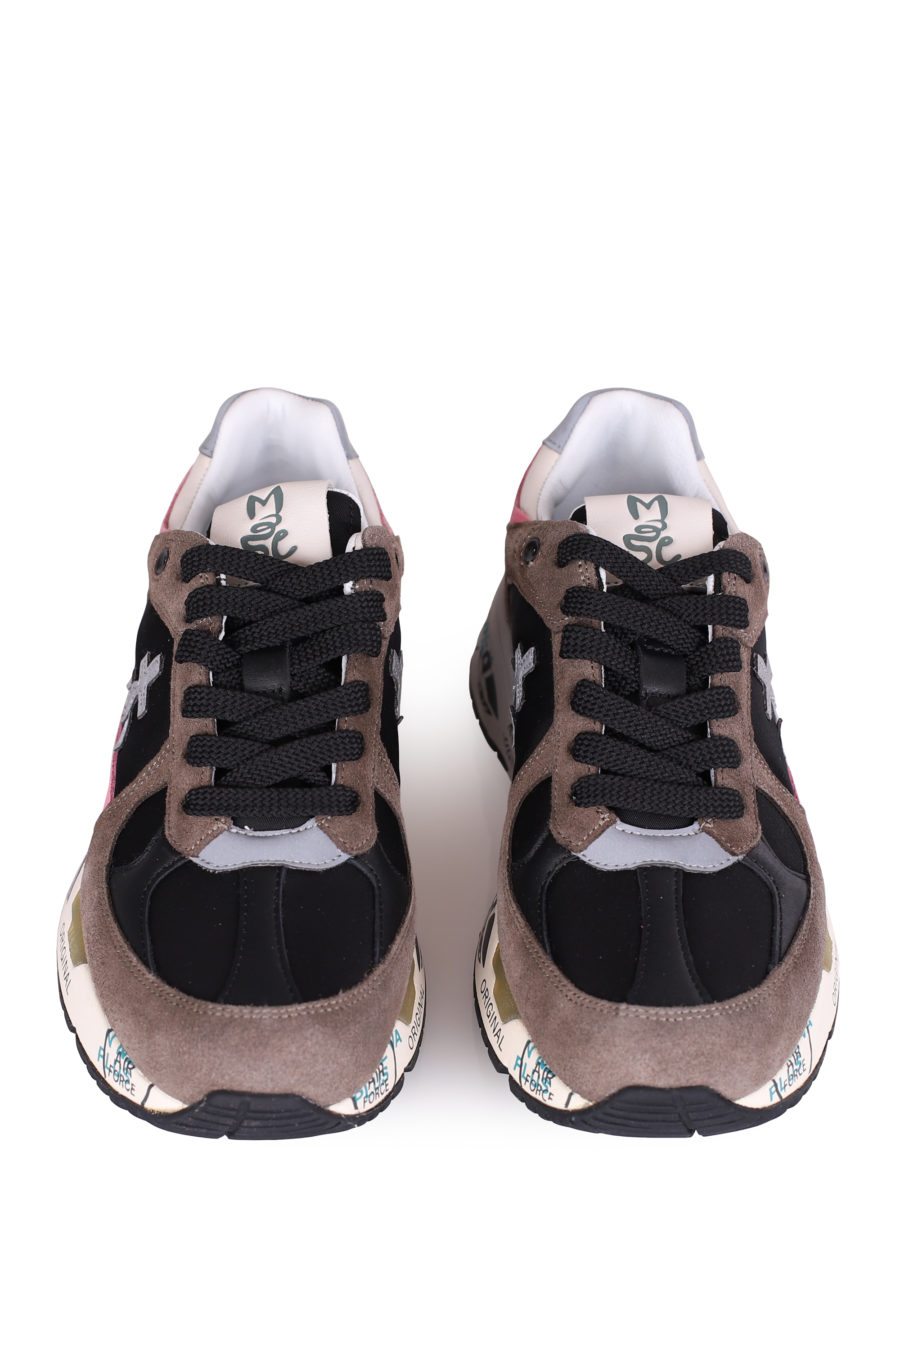 Zapatillas "Mased" color marrón y rosa - IMG 0004